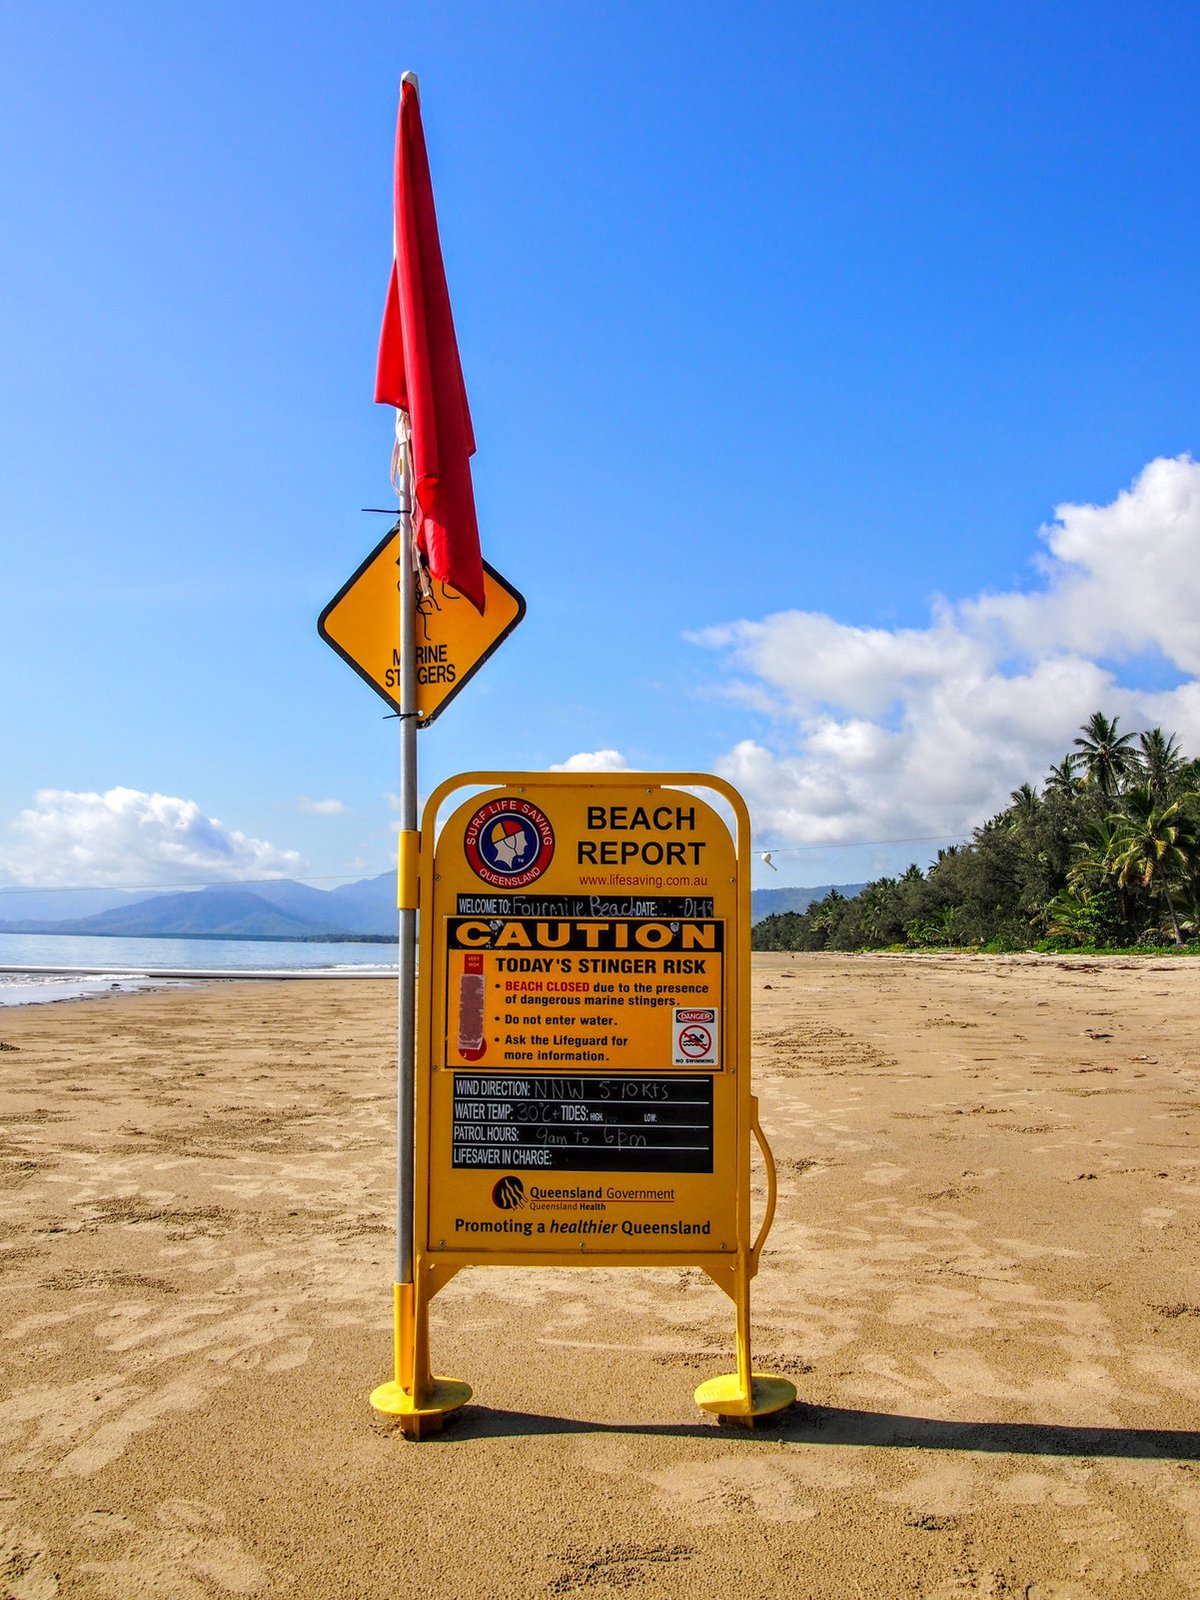 Port Douglas Beach Closed Sign on sandy beach